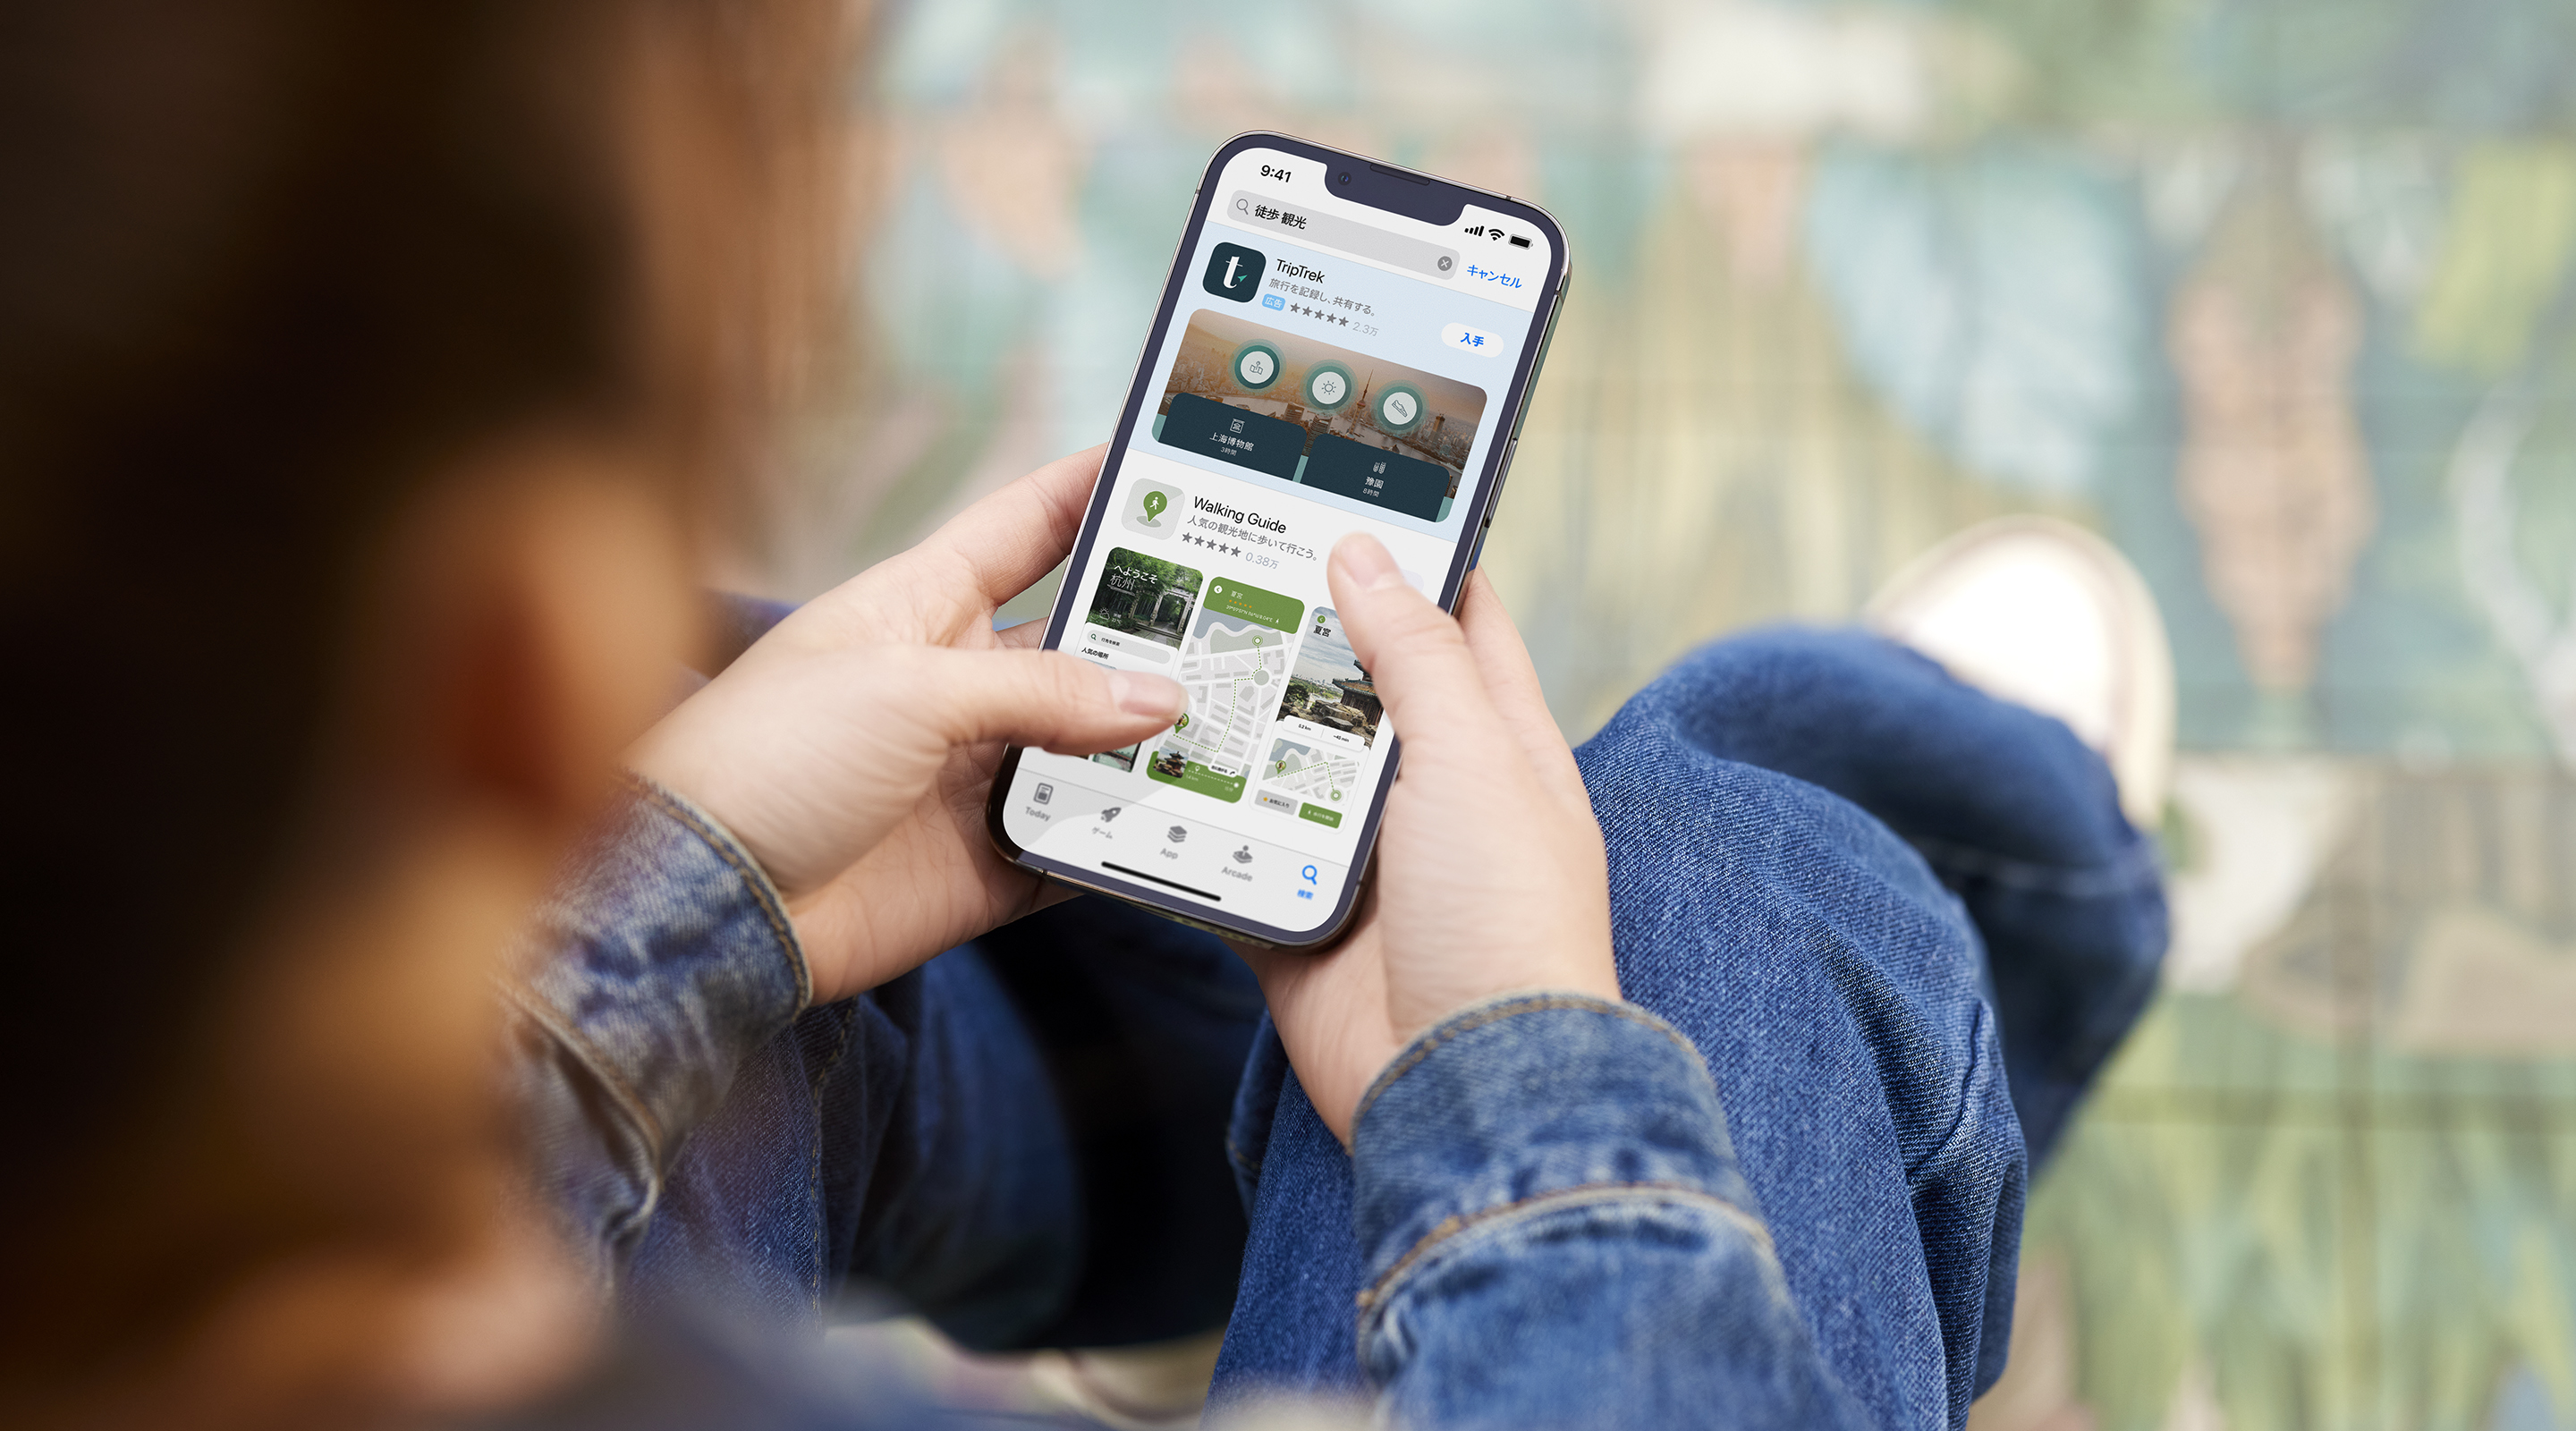 両手でiPhoneを持っている様子。App Storeで、サンプルAppのTripTrekの検索結果広告が表示され、検索ボックスに「walking tours」（ウォーキングツアー）という用語が入力されている。 